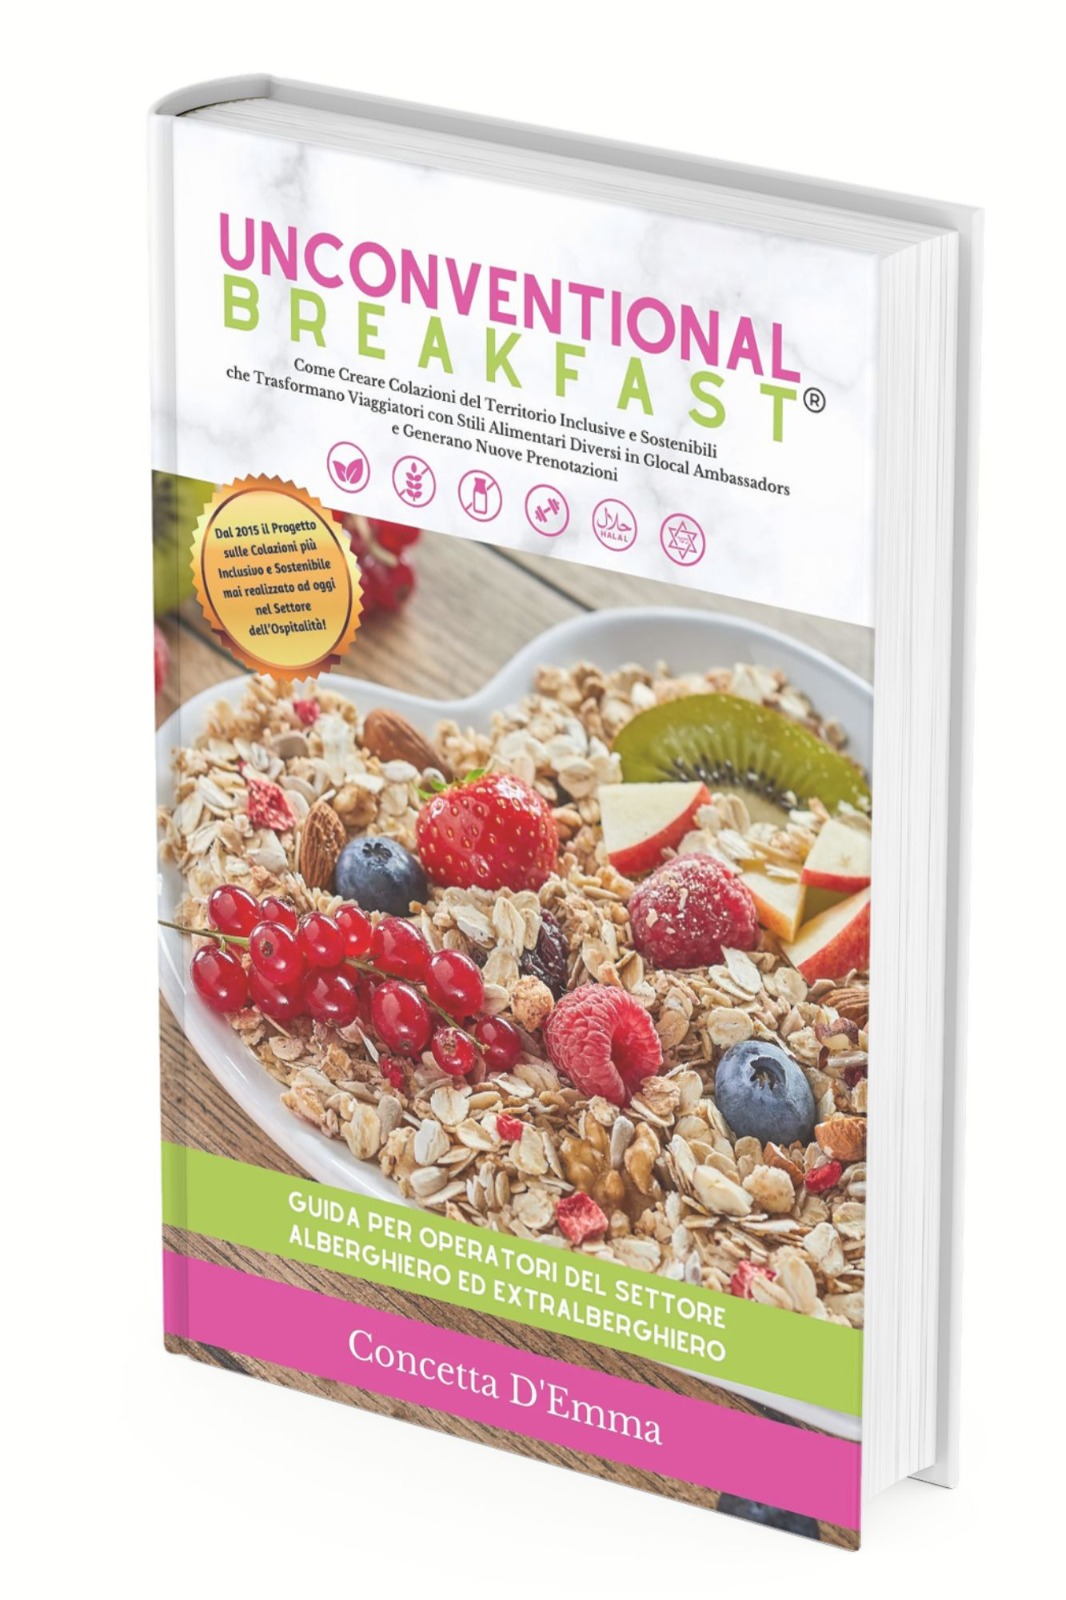 Concetta D'emma ha presentato il 5 Aprile il suo libro Unconventional Breakfast, la guida d'eccellenza per albergatori, articolo su Beyond the Magazine